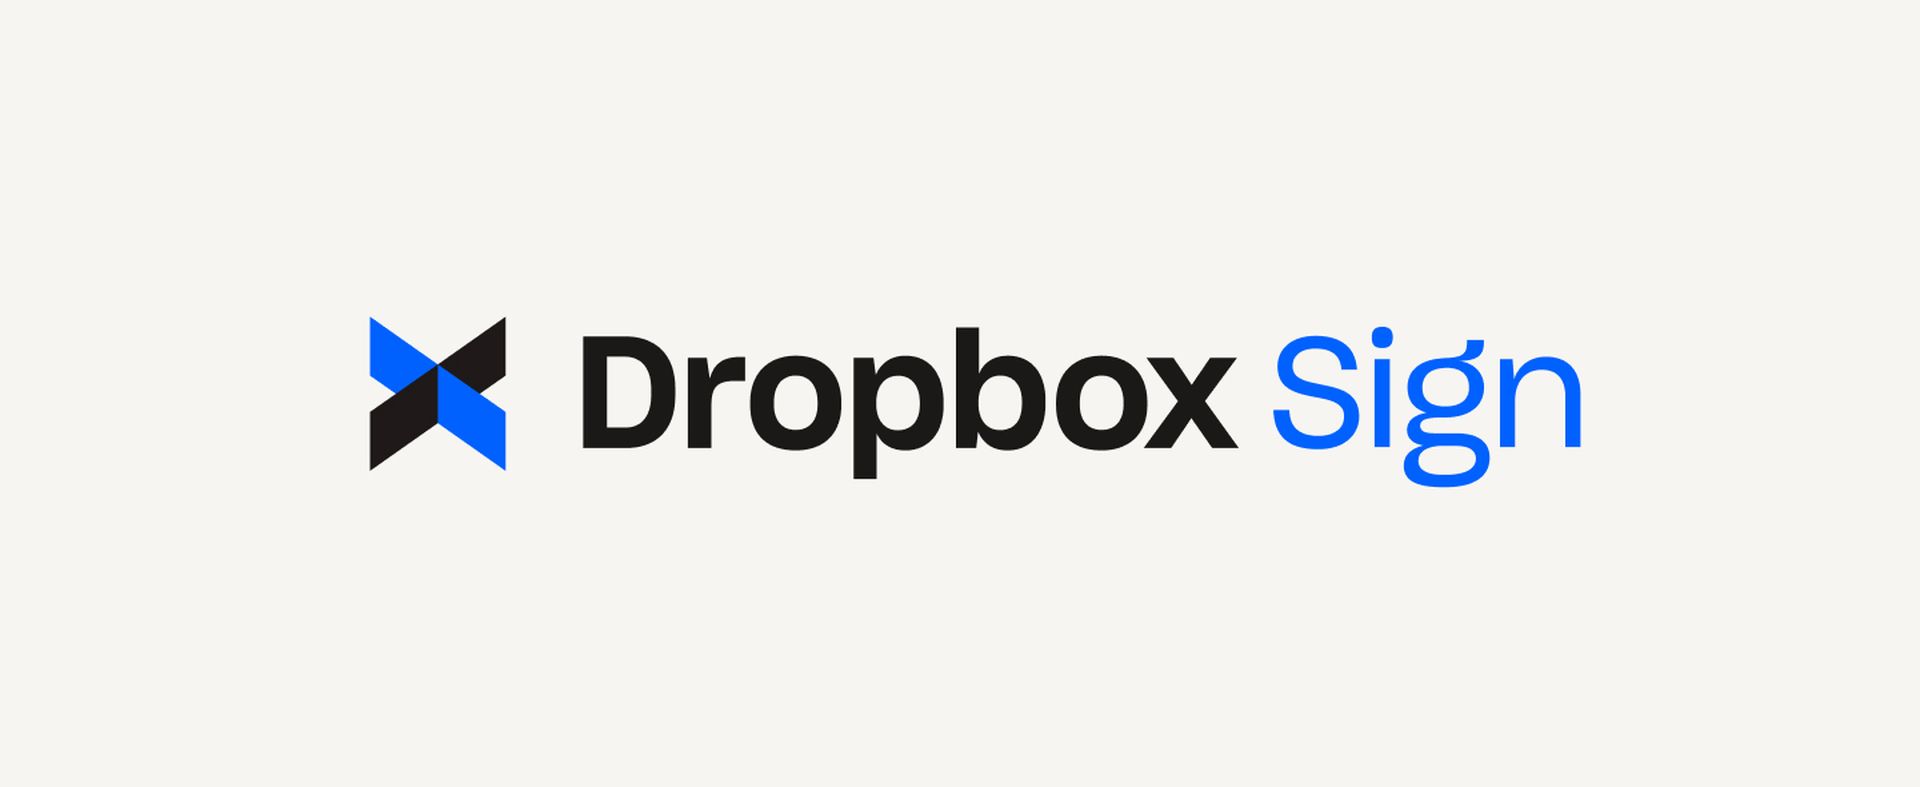 Der Dropbox-Sign-Angriff: Ein tiefer Einblick in die Datensicherheit und die Auswirkungen